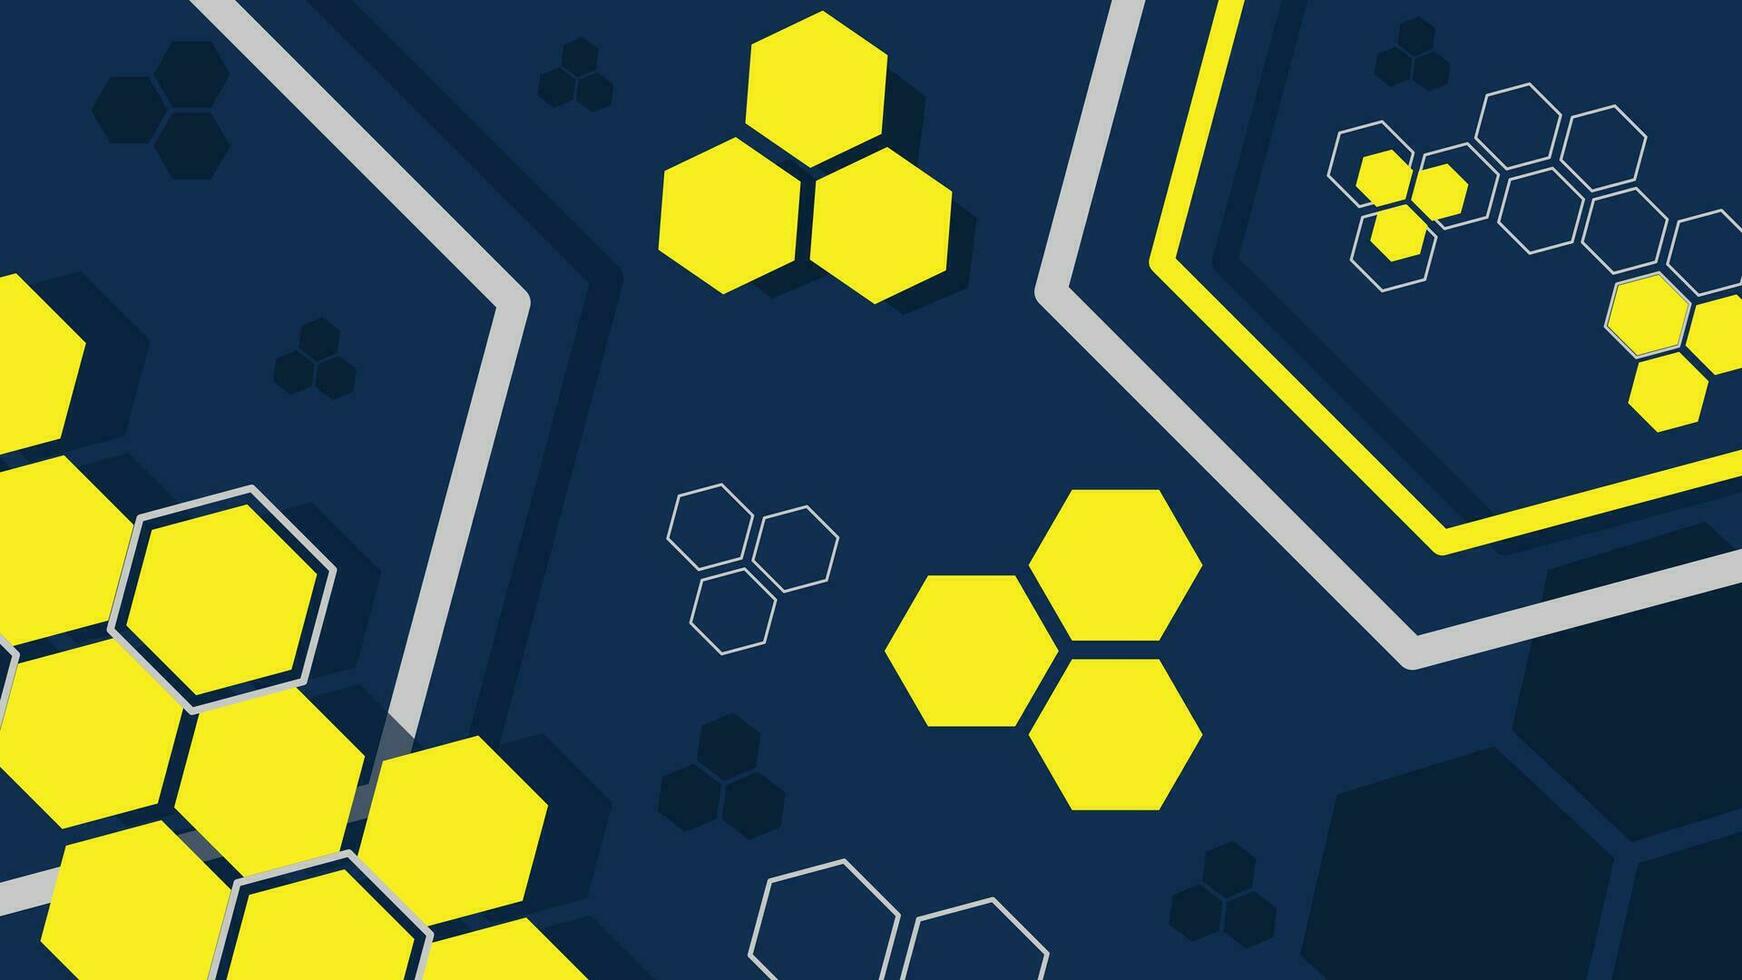 4k ultra alto definición resumen fondo, moderno hexagonal formas, oscuro azul amarillo. utilizar para decoración, ilustración, fondo, fondo de pantalla. vector